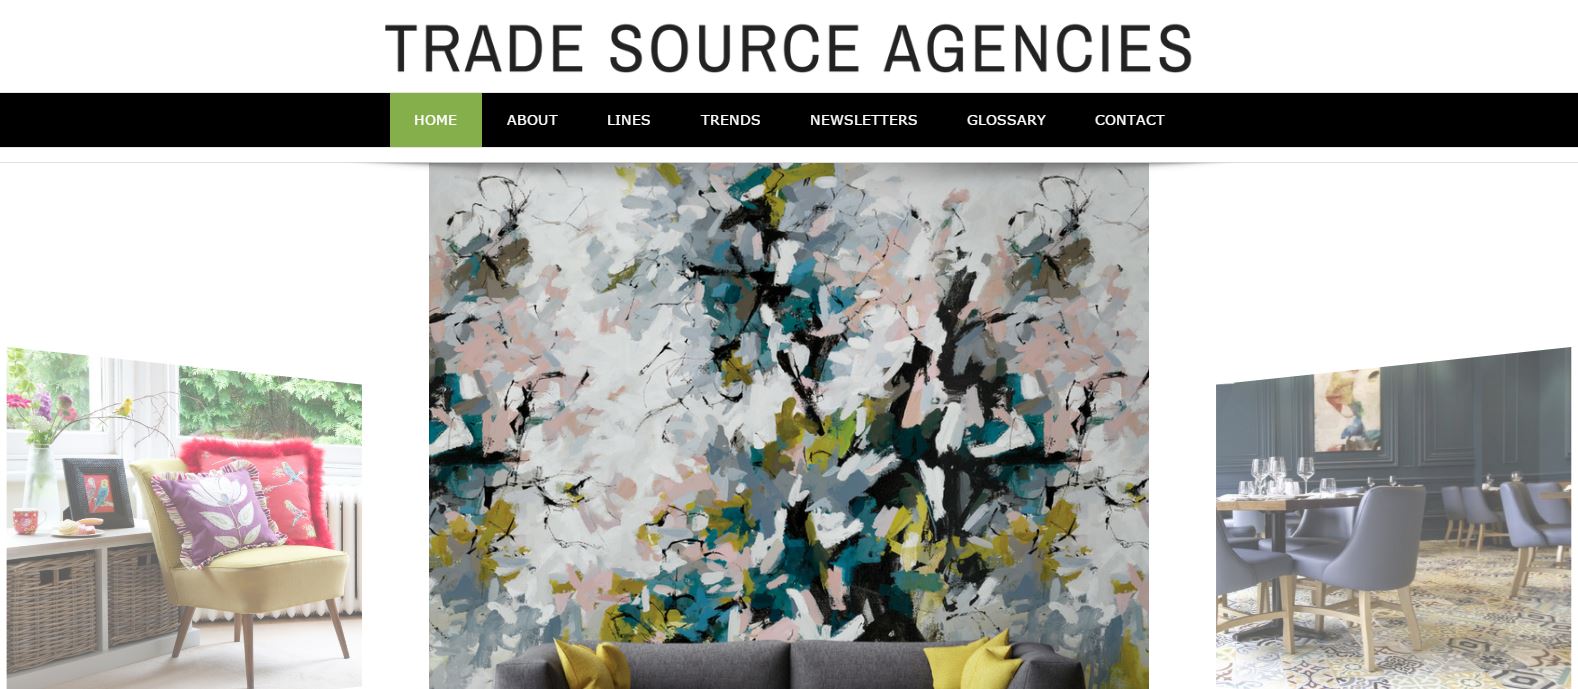 Trade Source Agencies